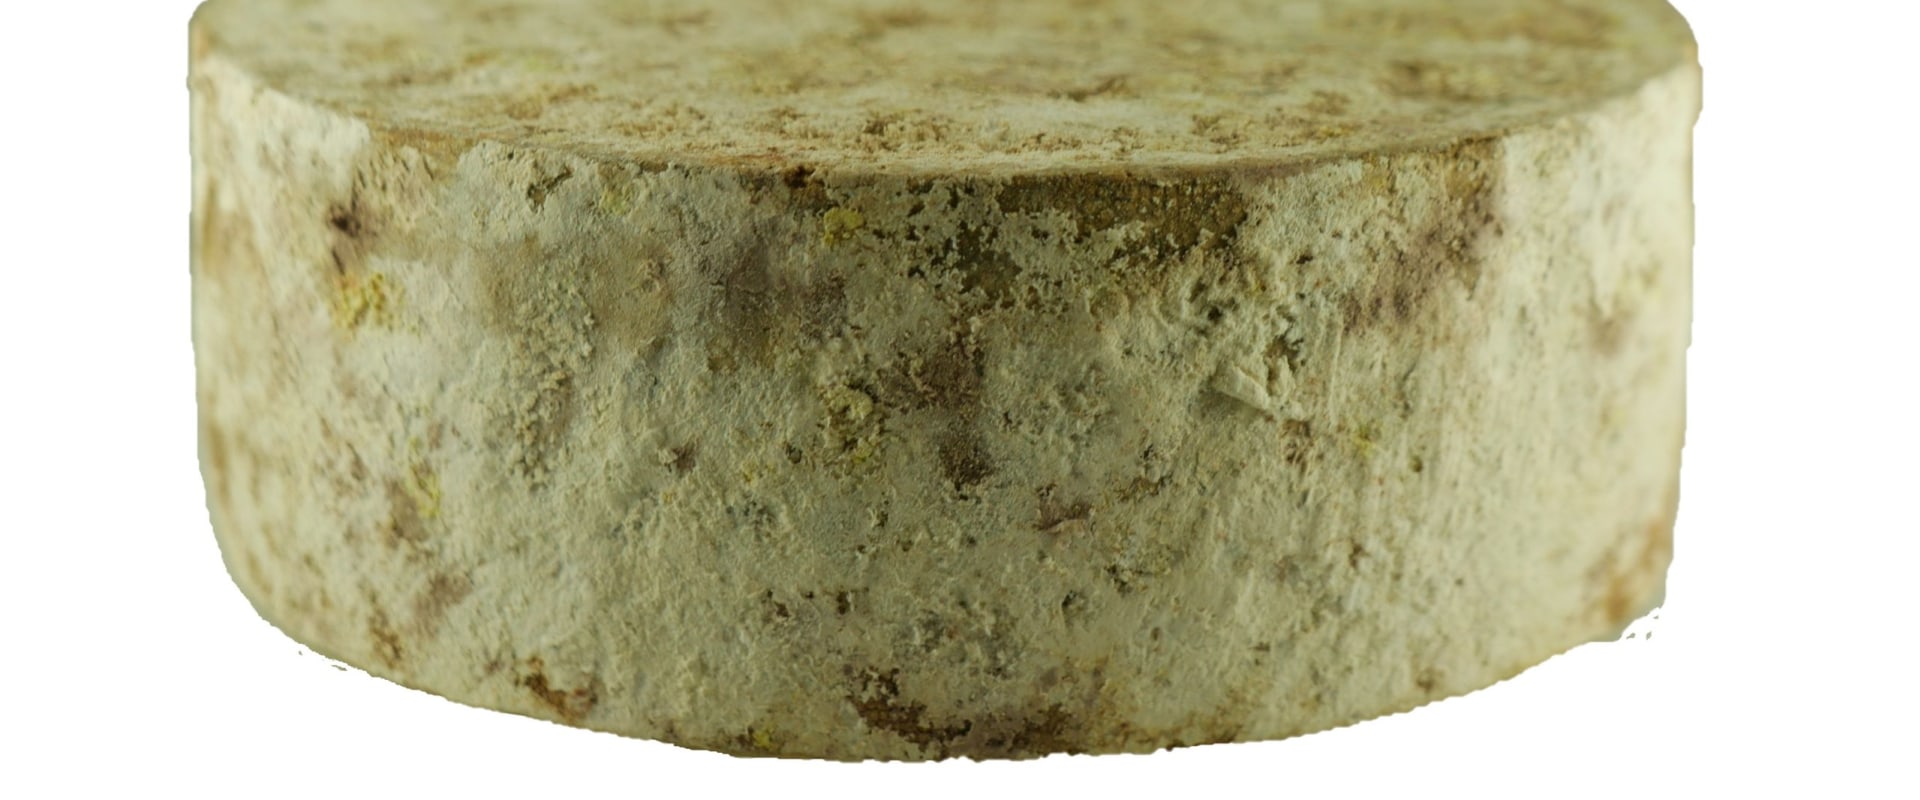 Les saveurs uniques du fromage de montagne